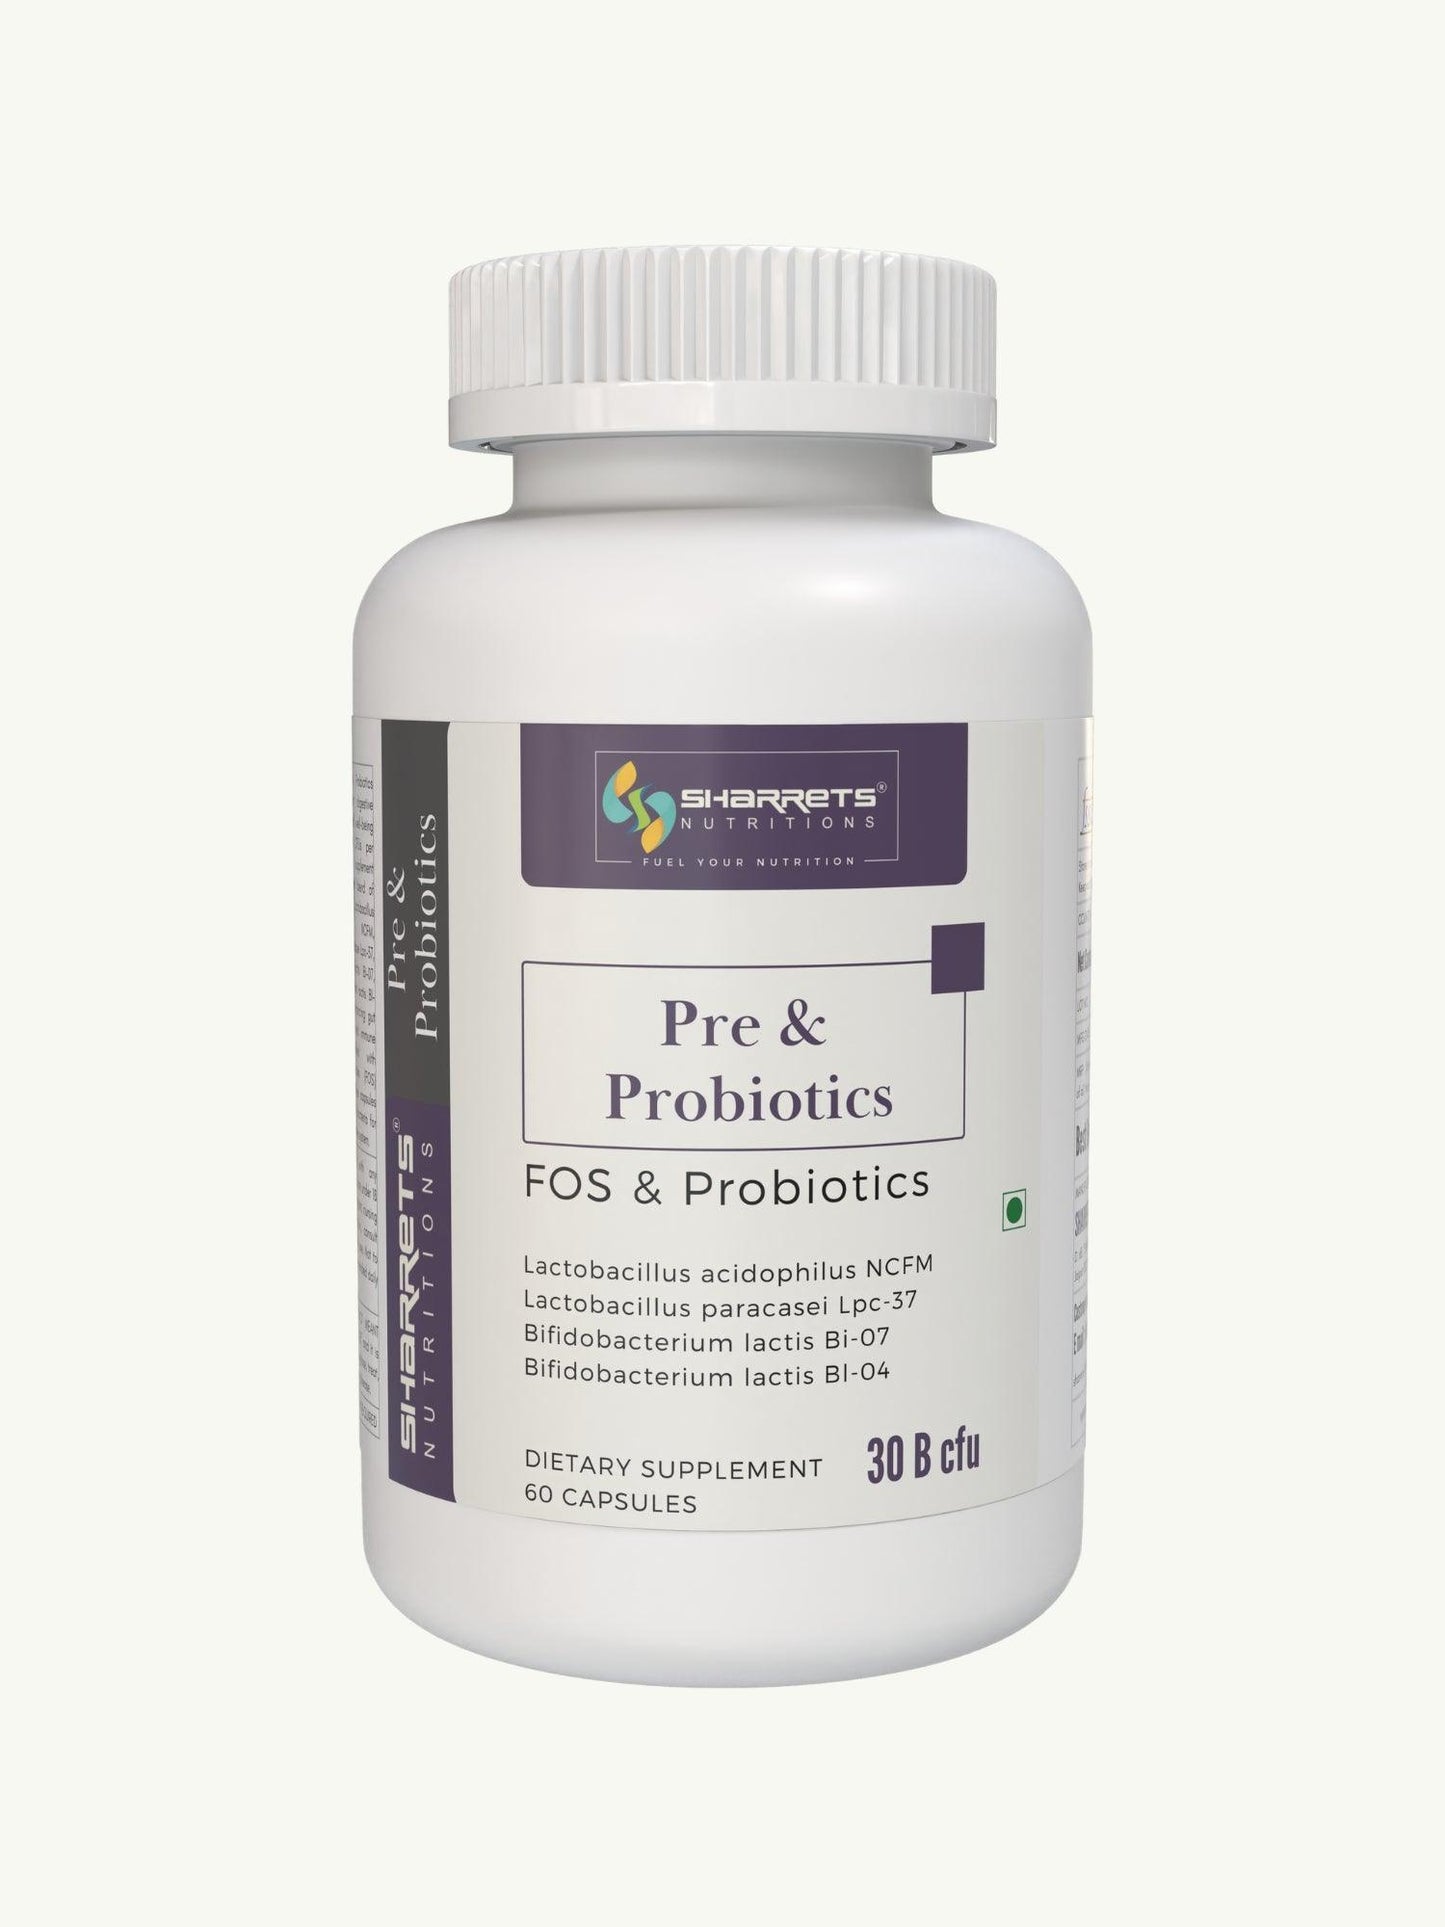 Sharrets Pre and Probiotics - Sharrets Nutritions LLP